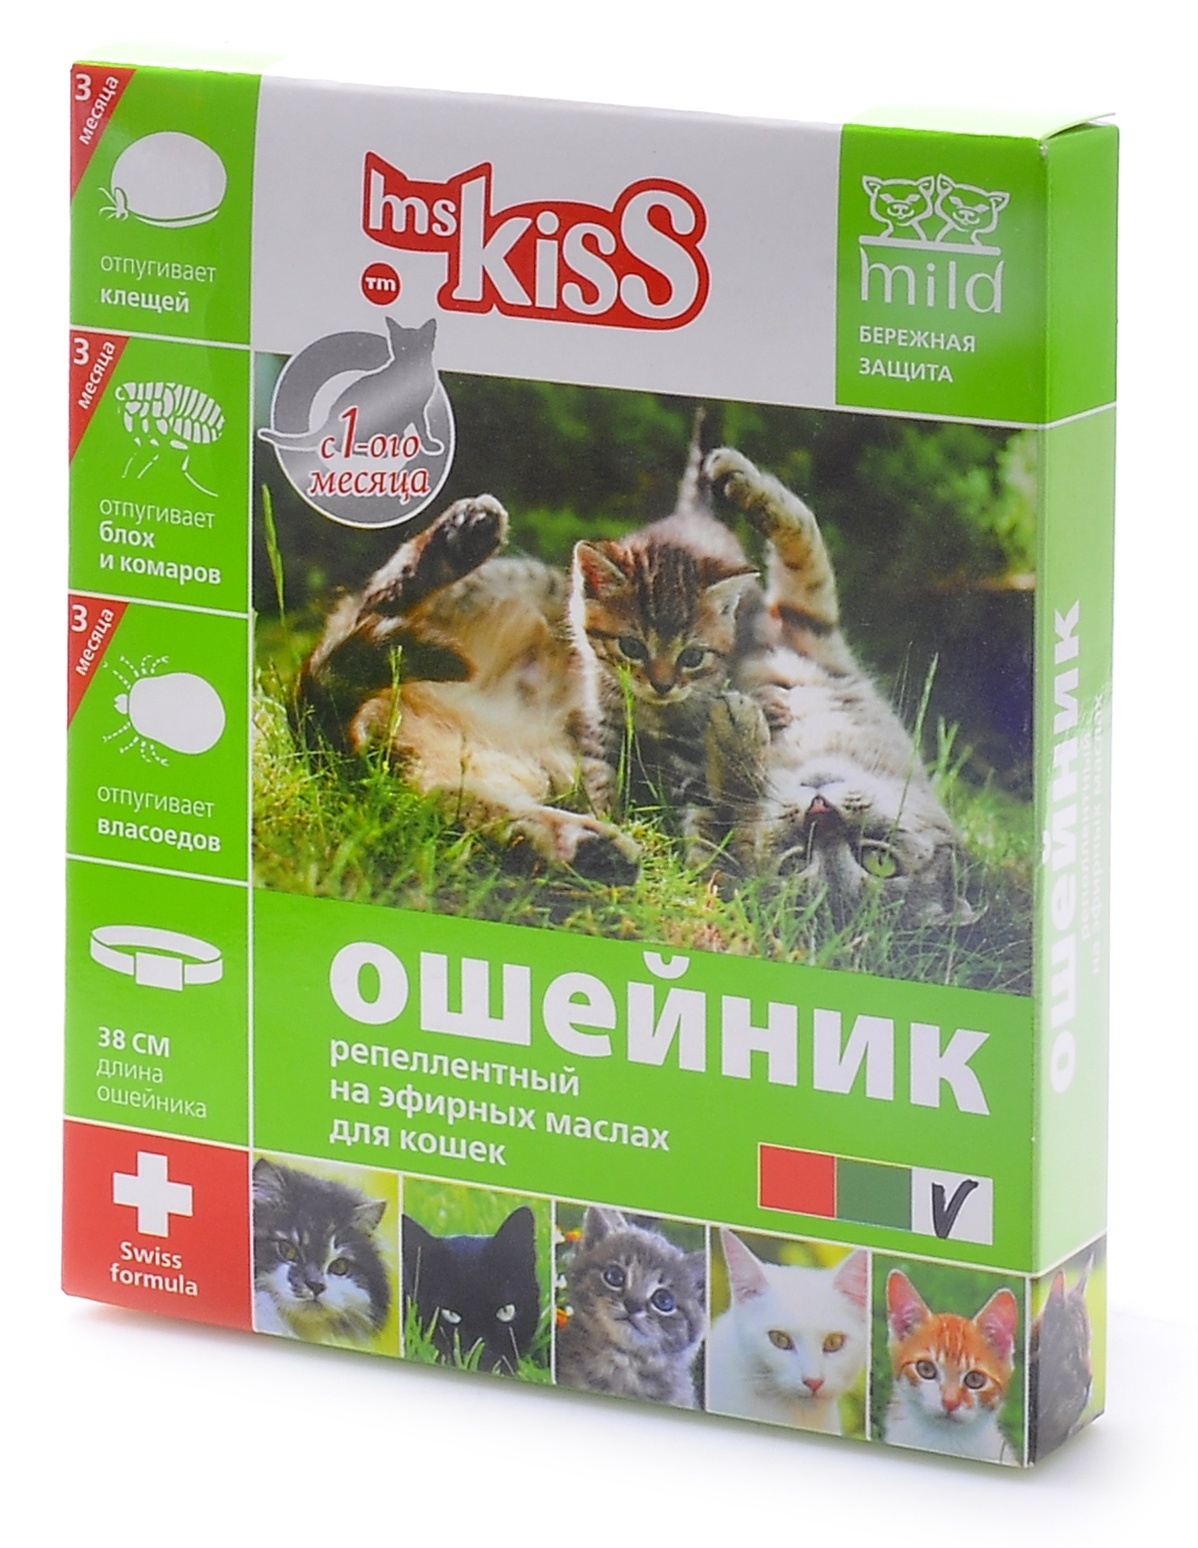 Ms.Kiss Ms.Kiss ошейник от блох, клещей, комаров для котят с 4 недель и кошек, 38 см (38 г) 22700